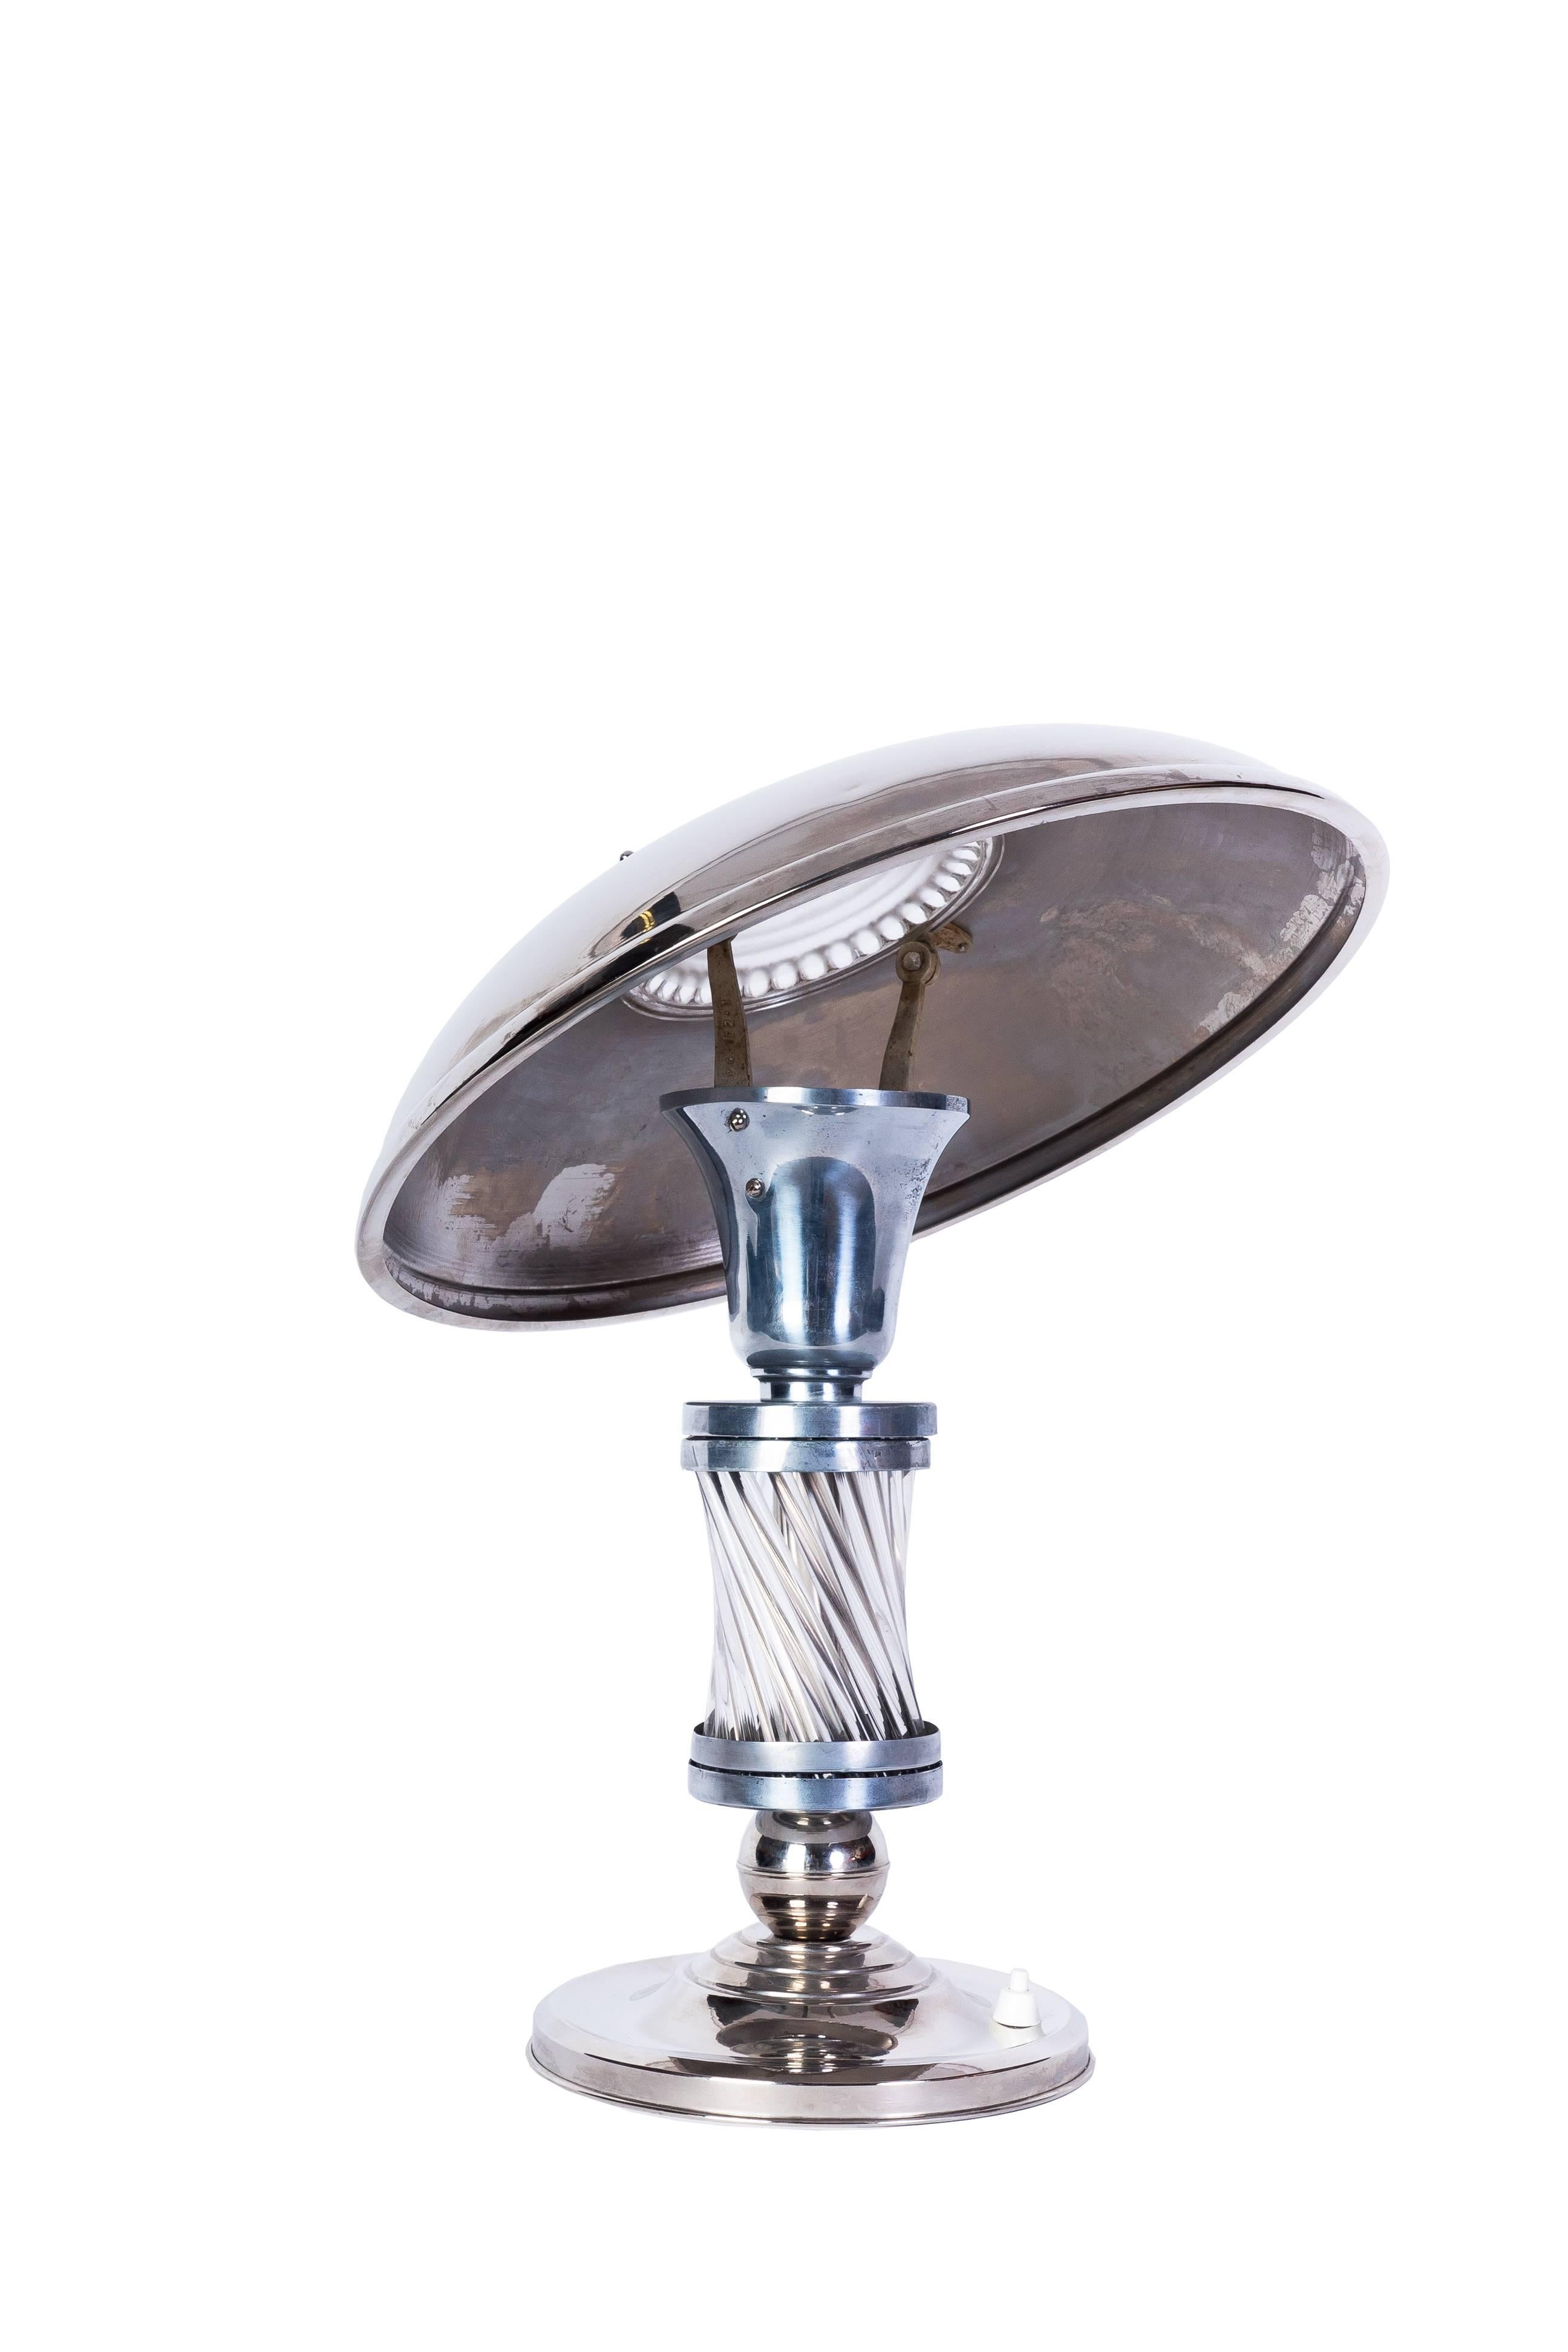 Diese luxuriöse Art-Déco-Tischlampe (um 1925) hat einen verchromten Korpus mit einem versilberten Sockel und Schirm, der einen schönen Kontrast bildet. Glasstäbe auf dem Korpus und geformte Glasplatte auf dem Schirm. Der Schirm ist schwenkbar und